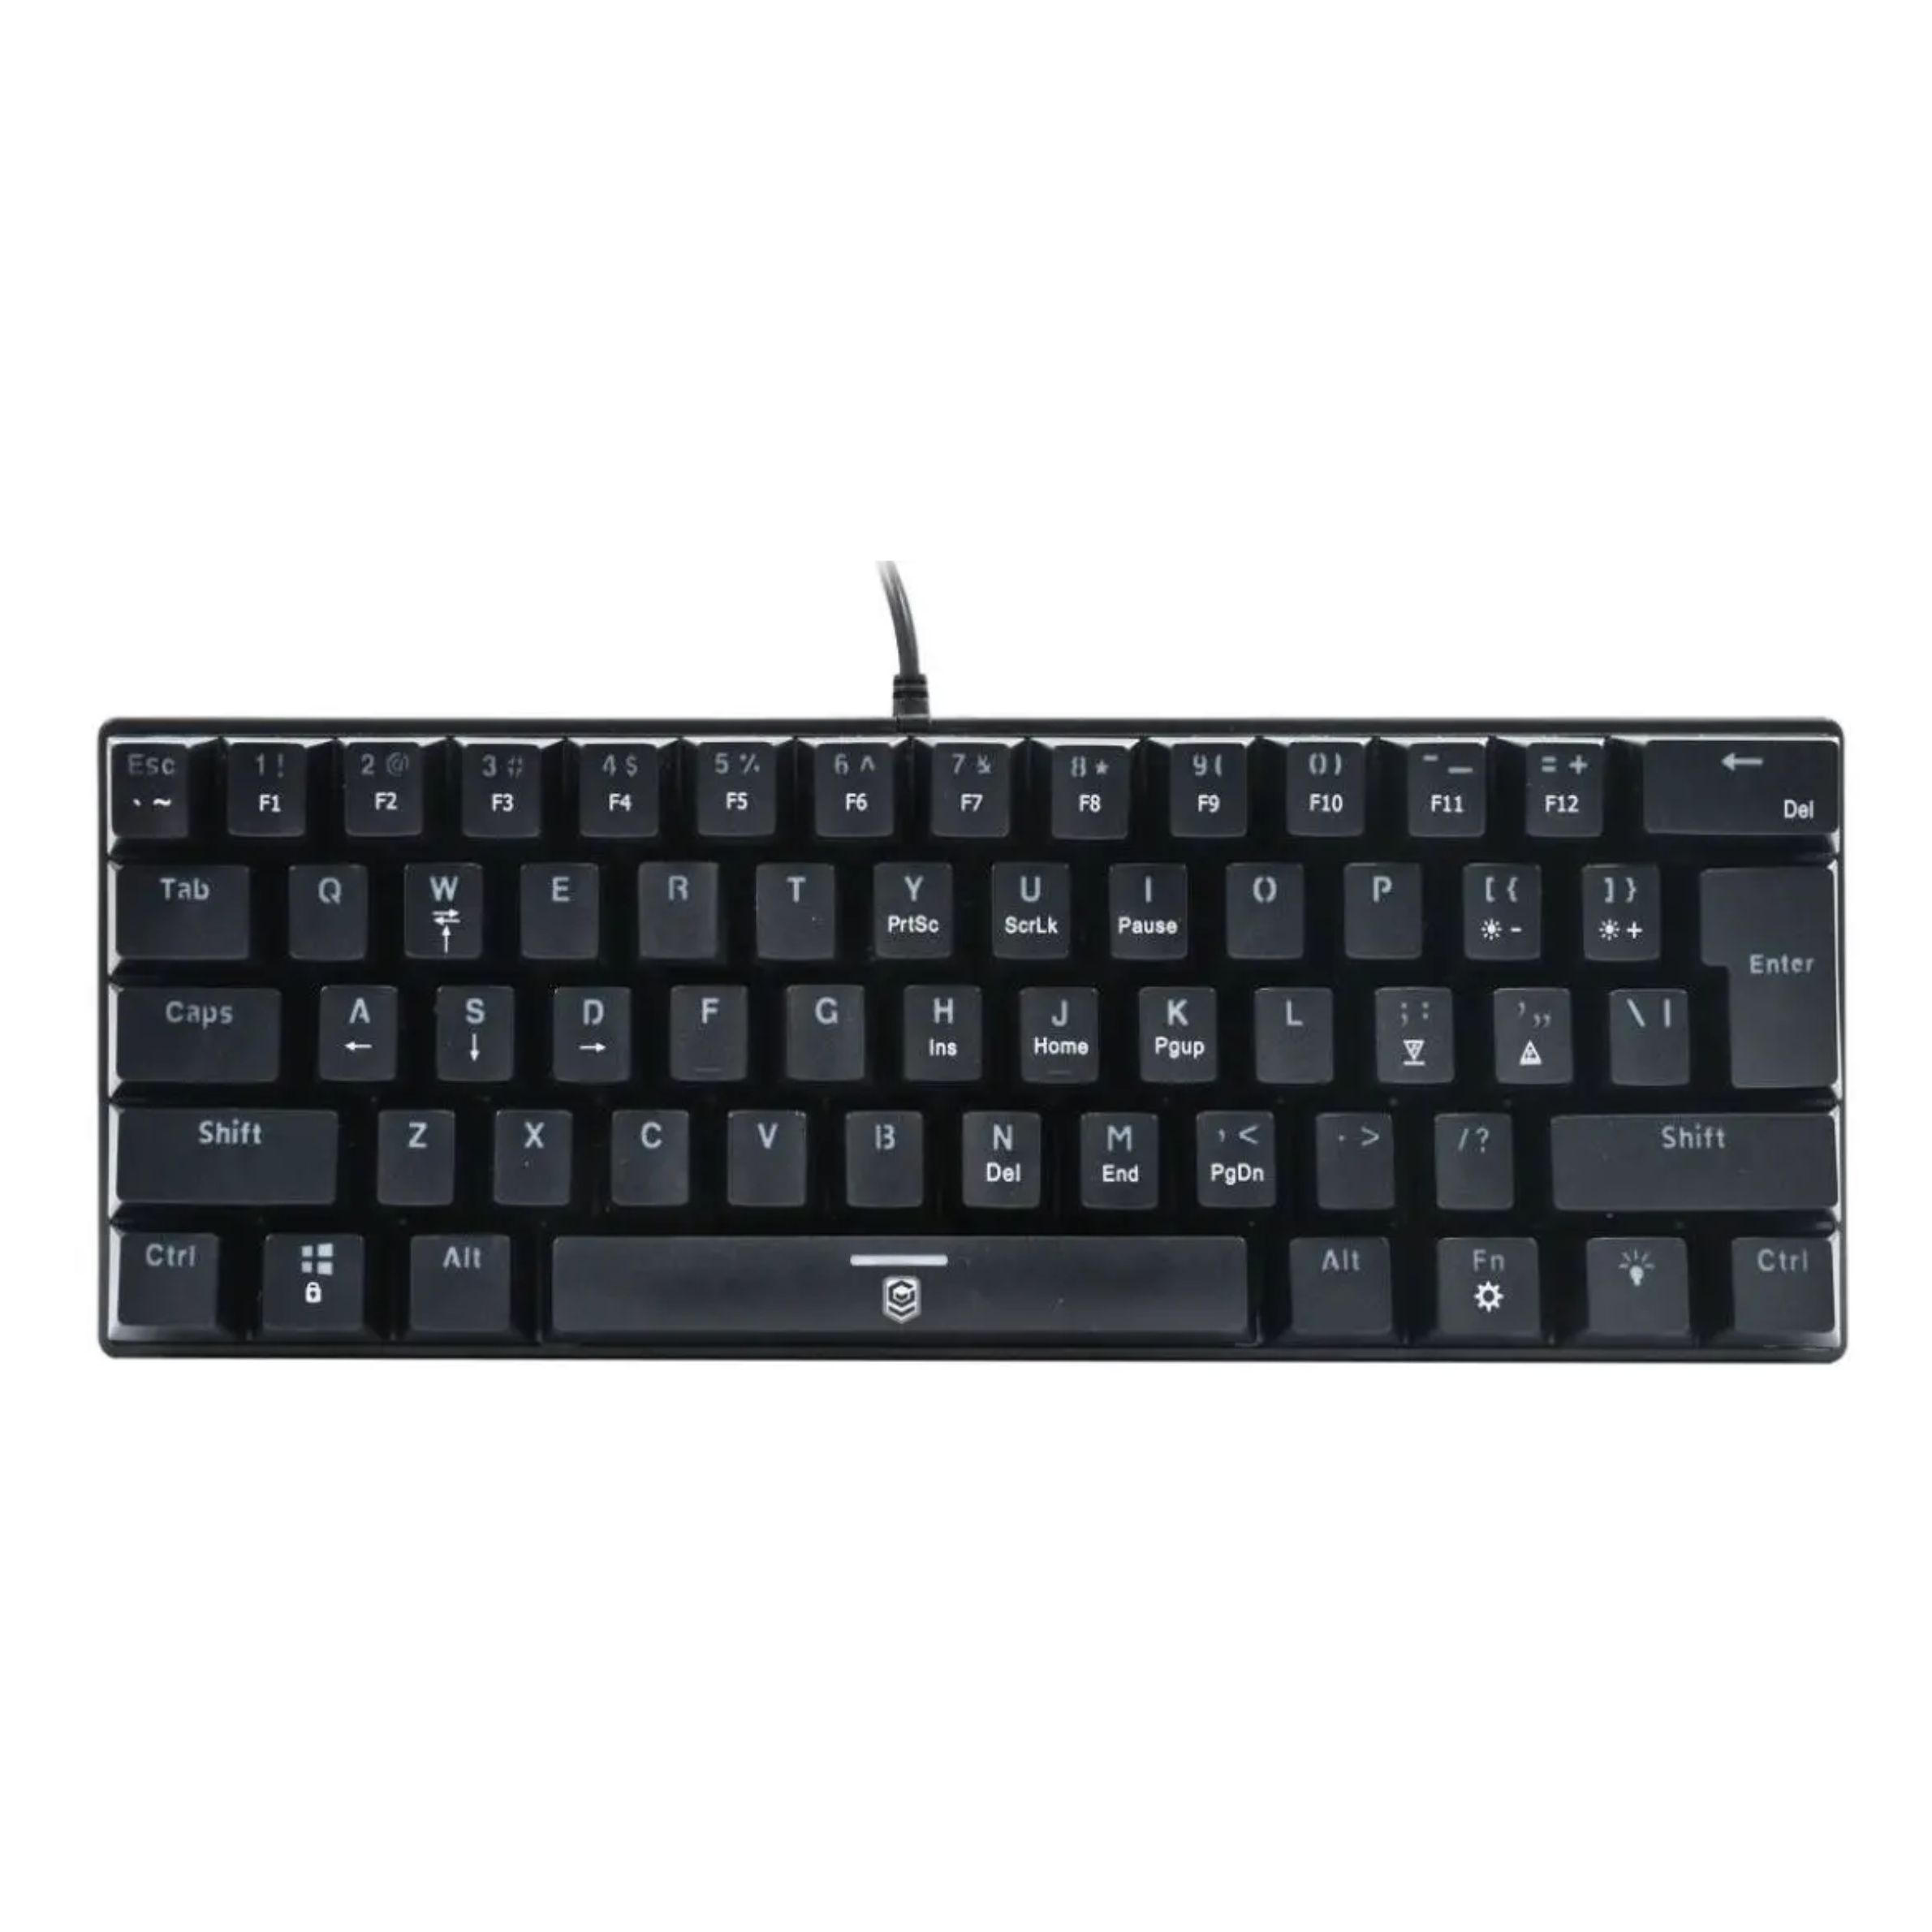 Anko Mini Mechanical Gaming Keyboard | HMR Shop N' Bid